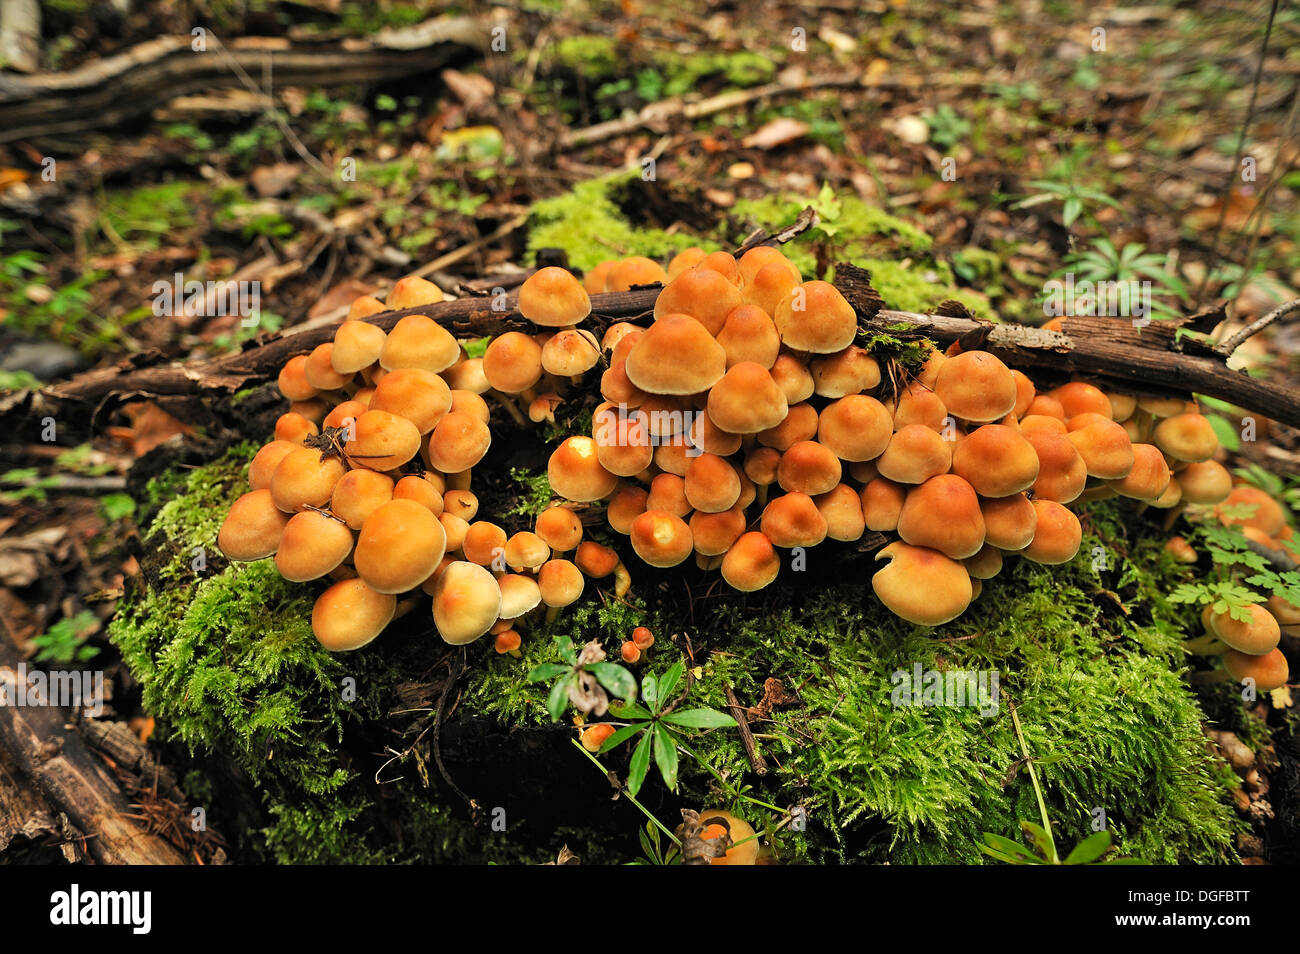 Sheathed Woodtuft (Kuehneromyces mutabilis), fungi growing on a moss-covered tree trunk, Mecklenburg-Western Pomerania, Germany Stock Photo